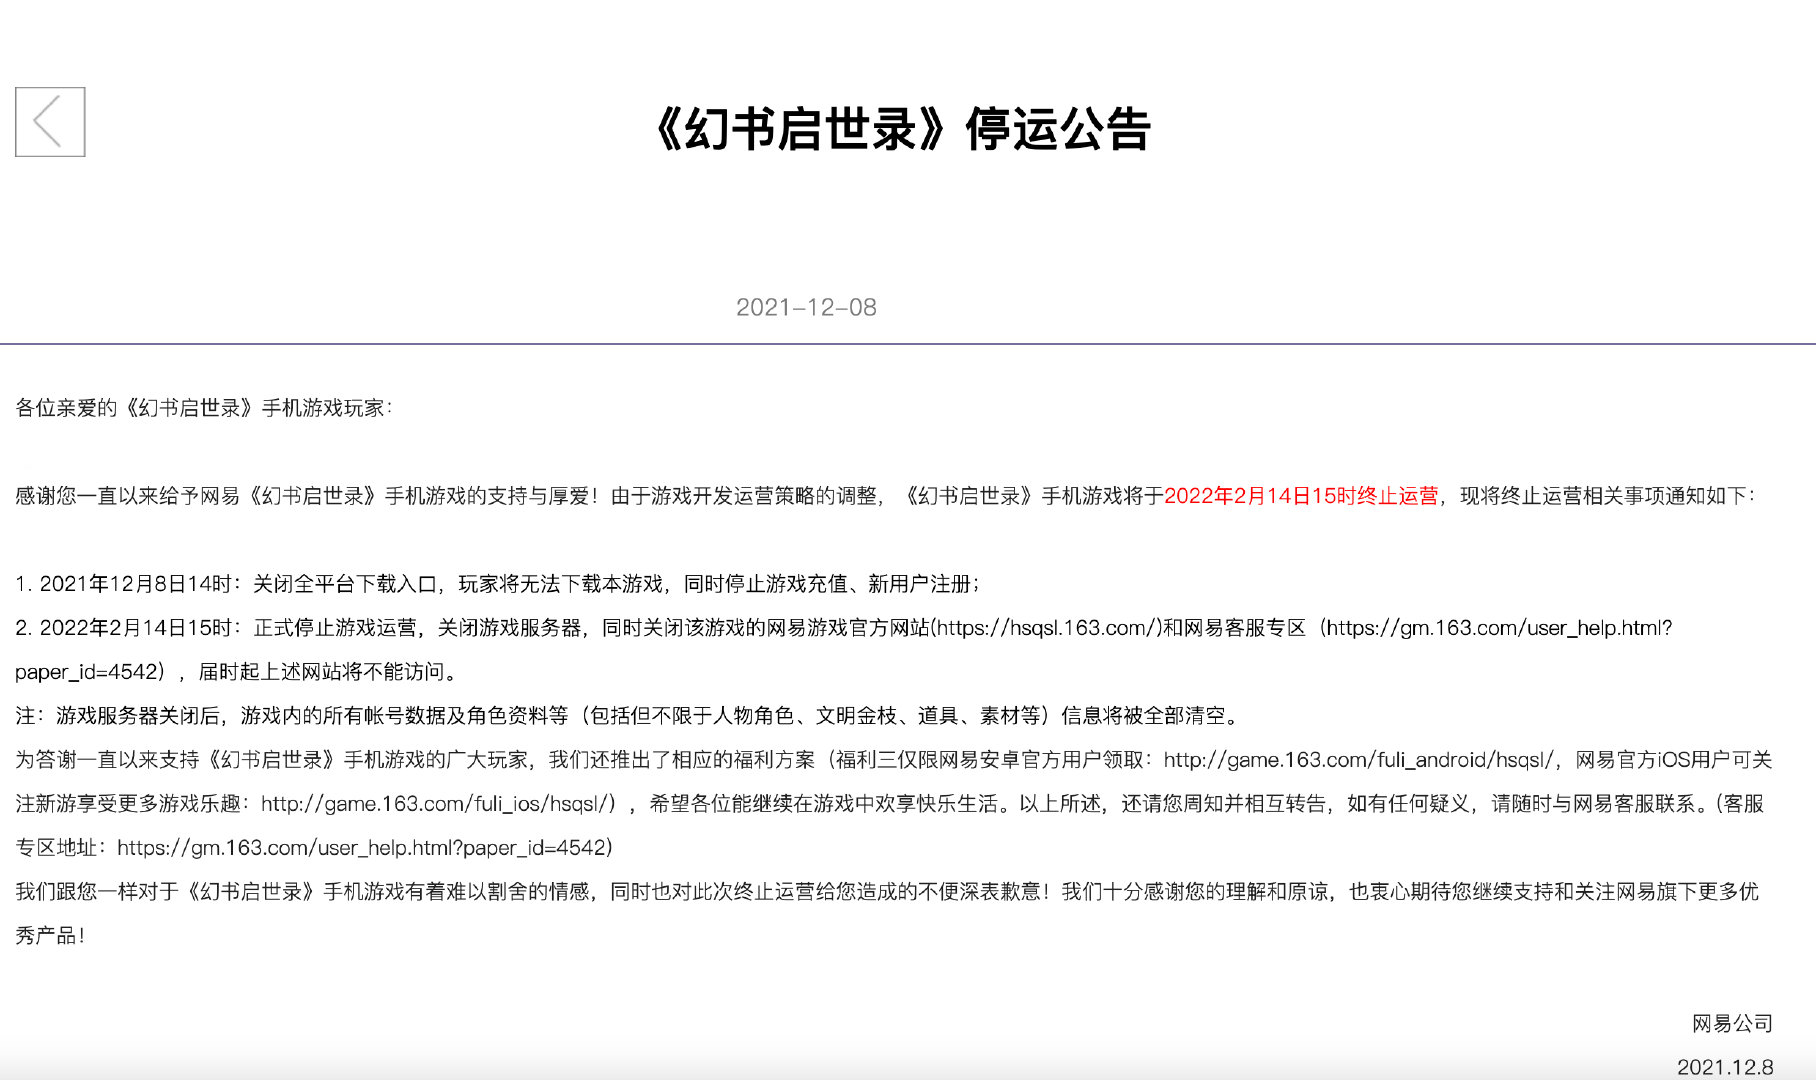 网易手游《黑潮之上》发停运公告 3月14日停服